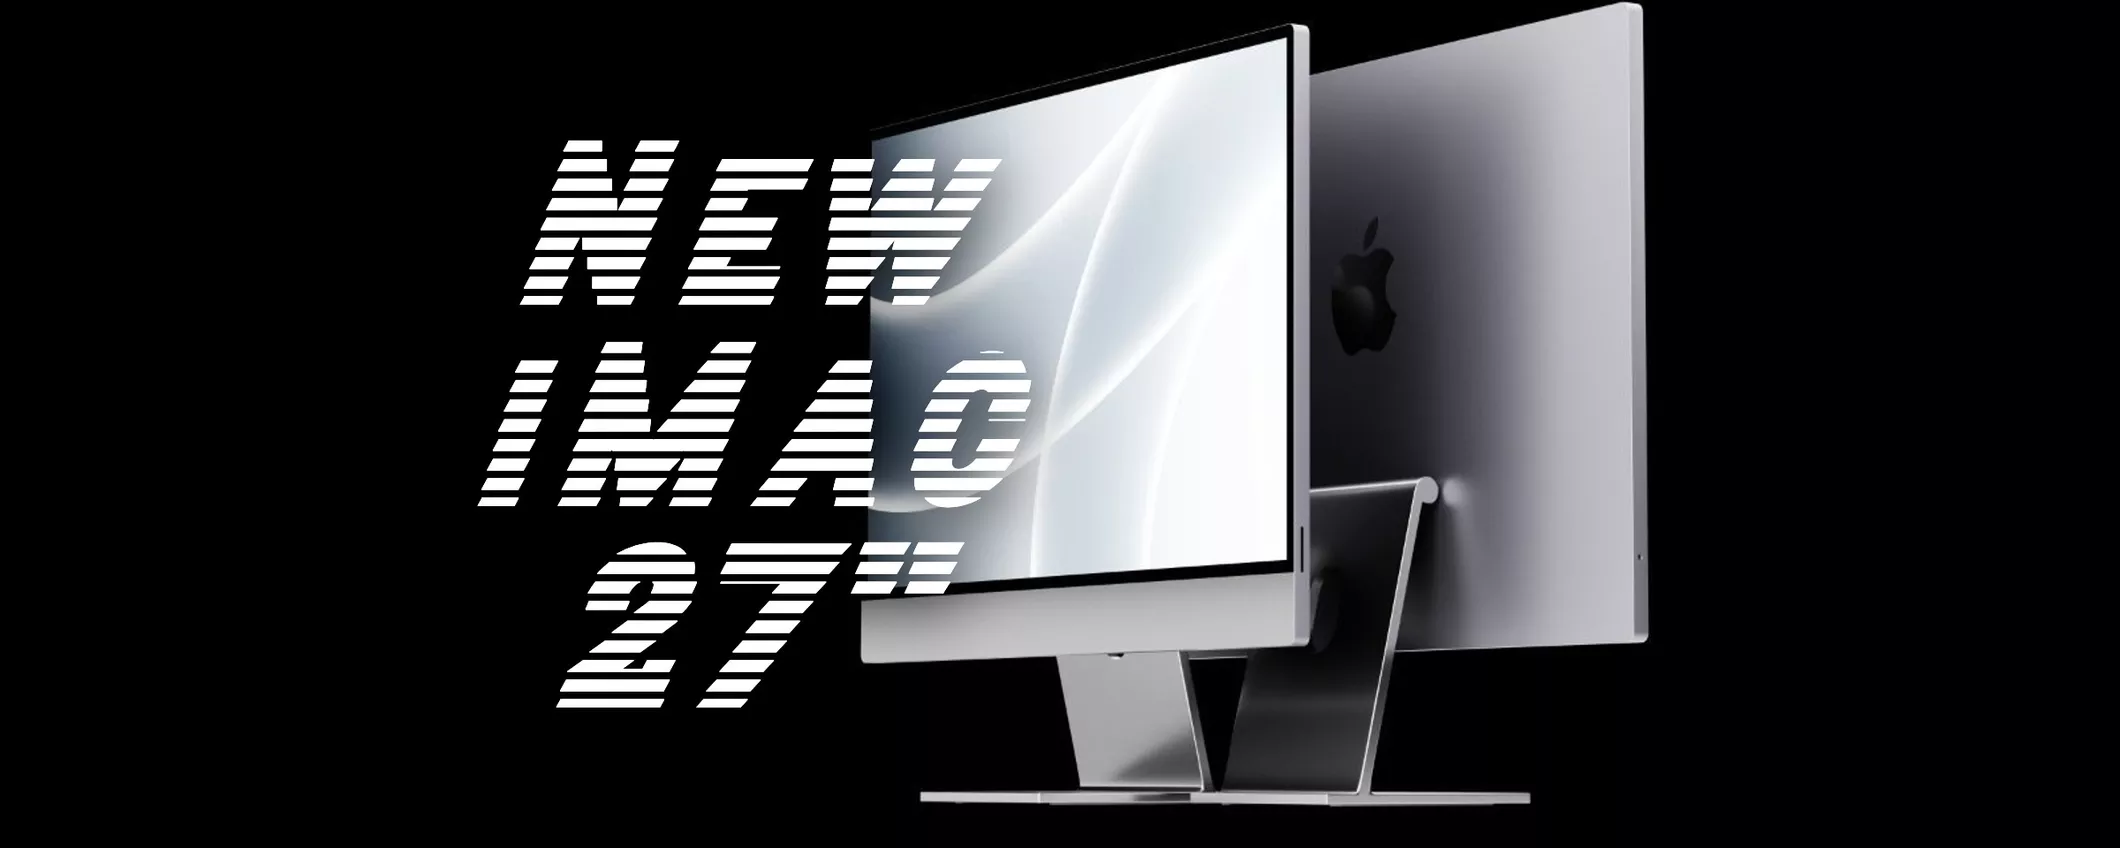 Apple, notizia BOMBA: il prototipo dell'iMac 27